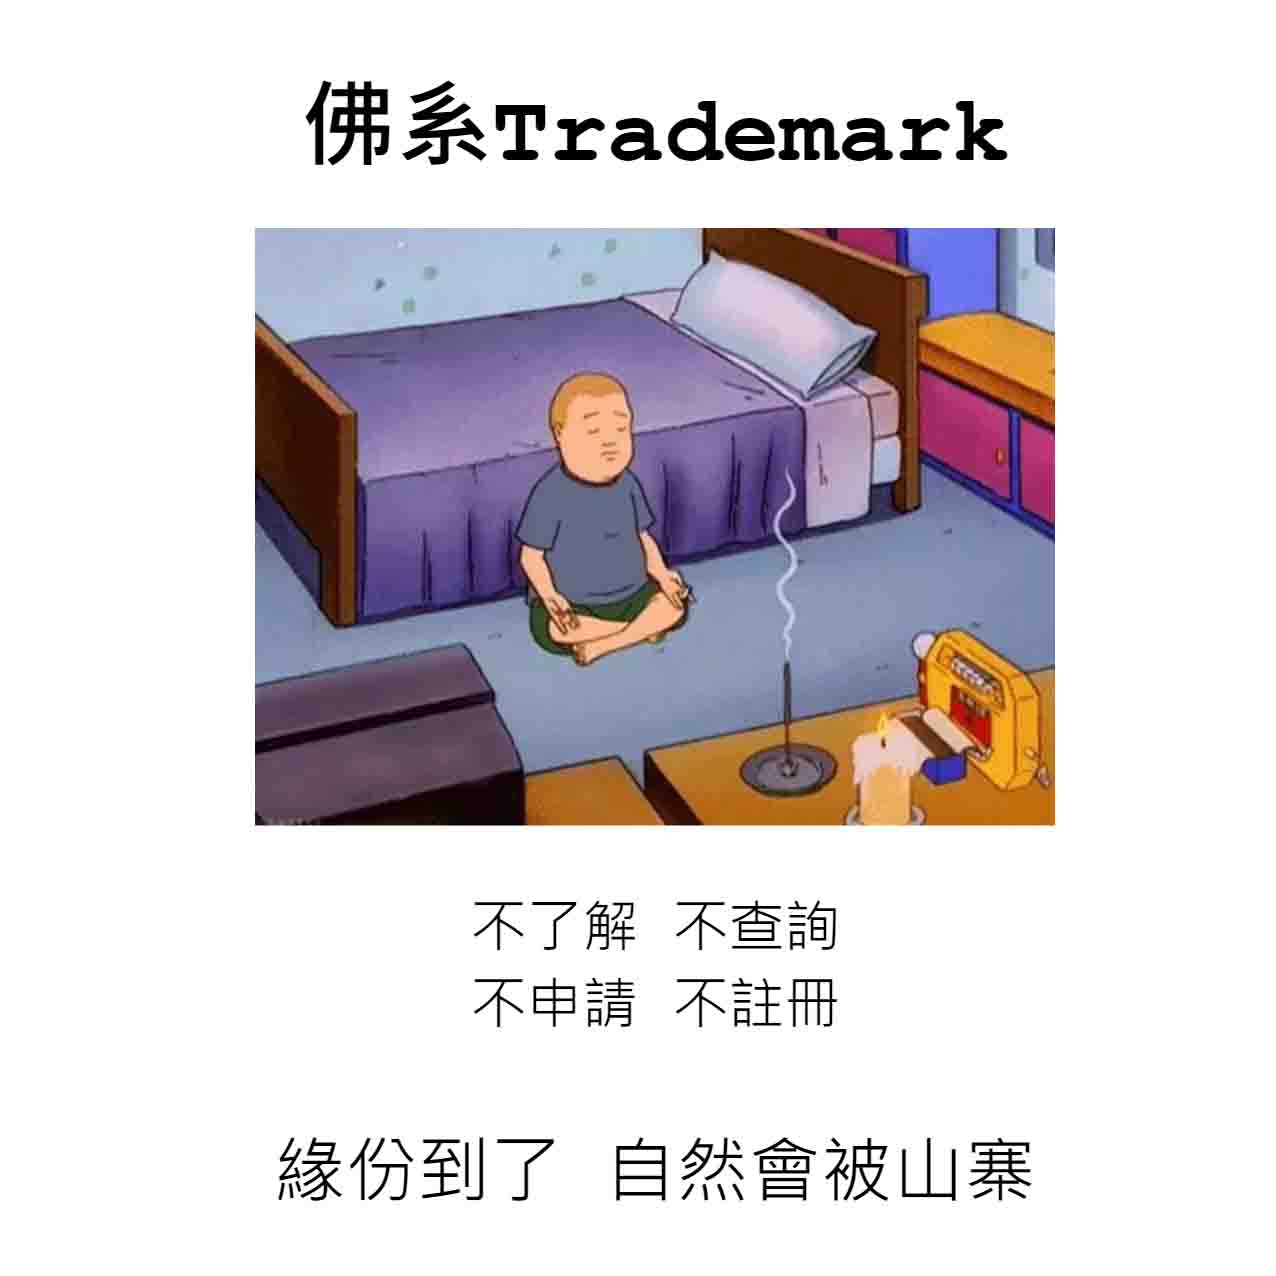 trademarkmacau.com